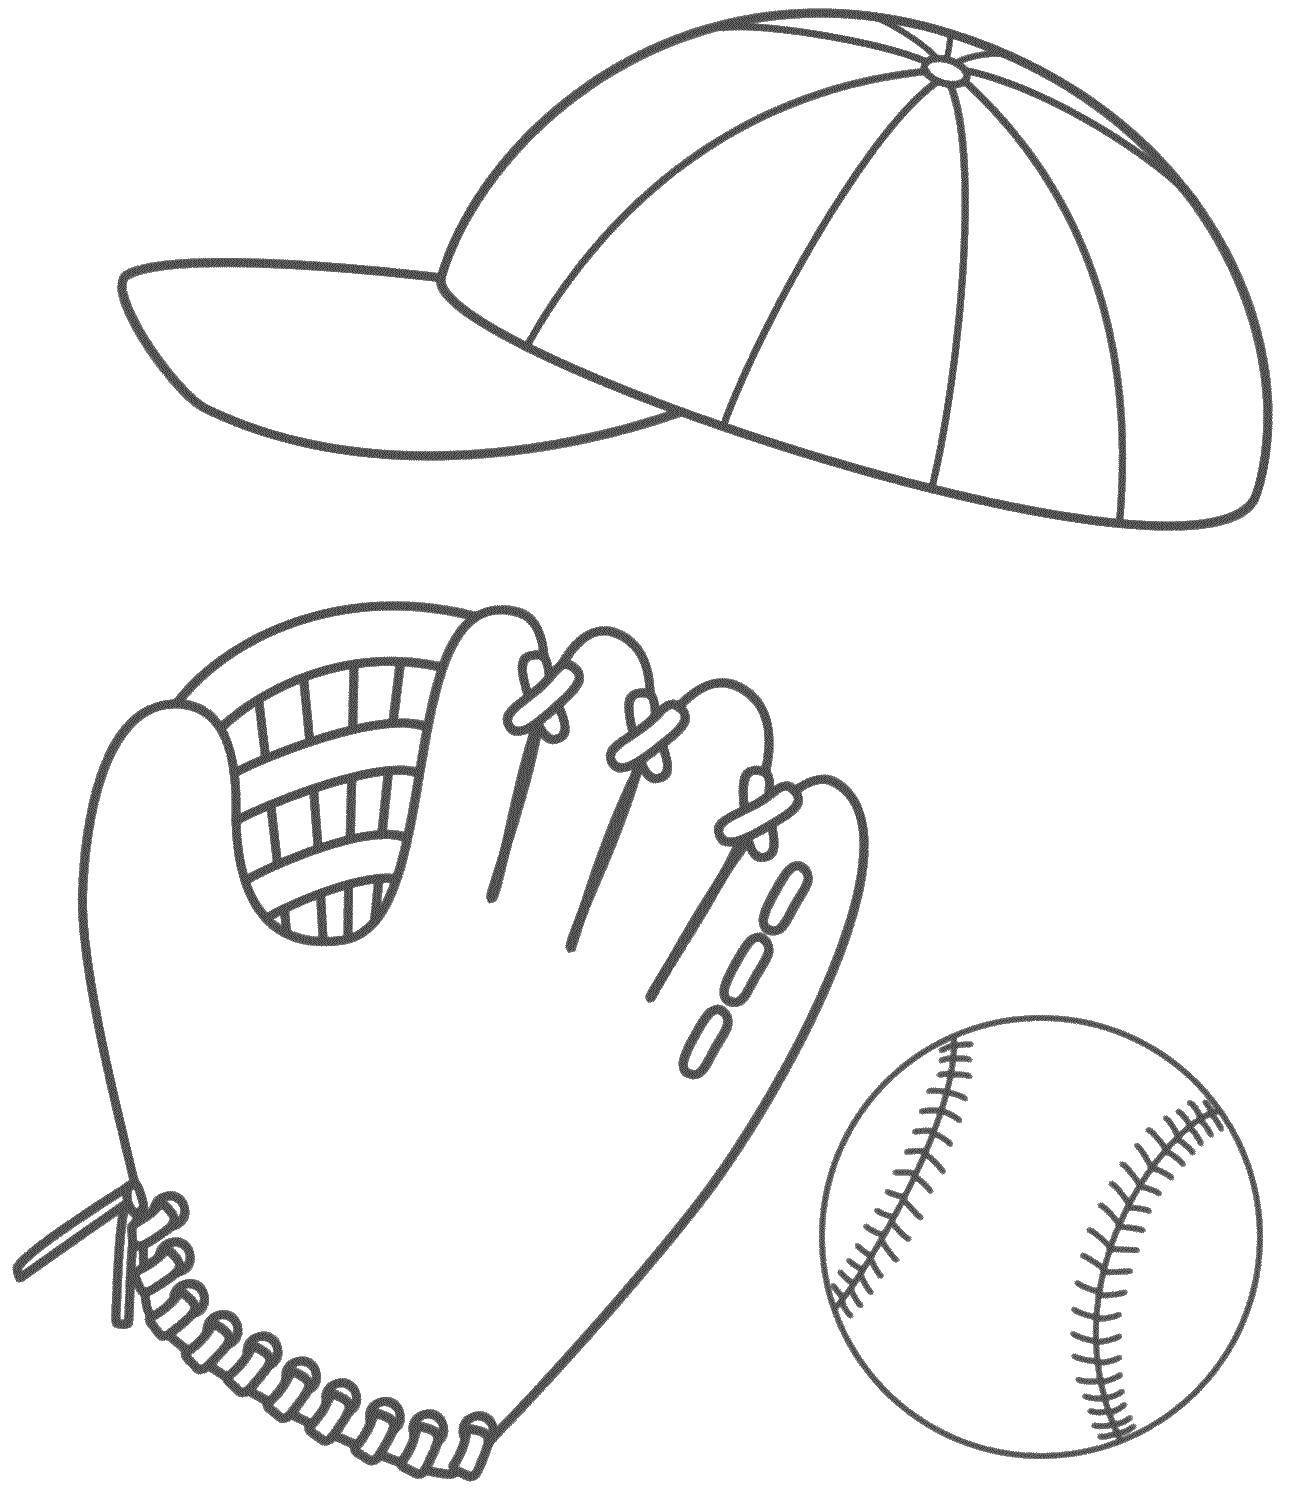 Раскраски на тему спорта и бейсбола для развития творческих способностей детей всех возрастов (бейсбол)